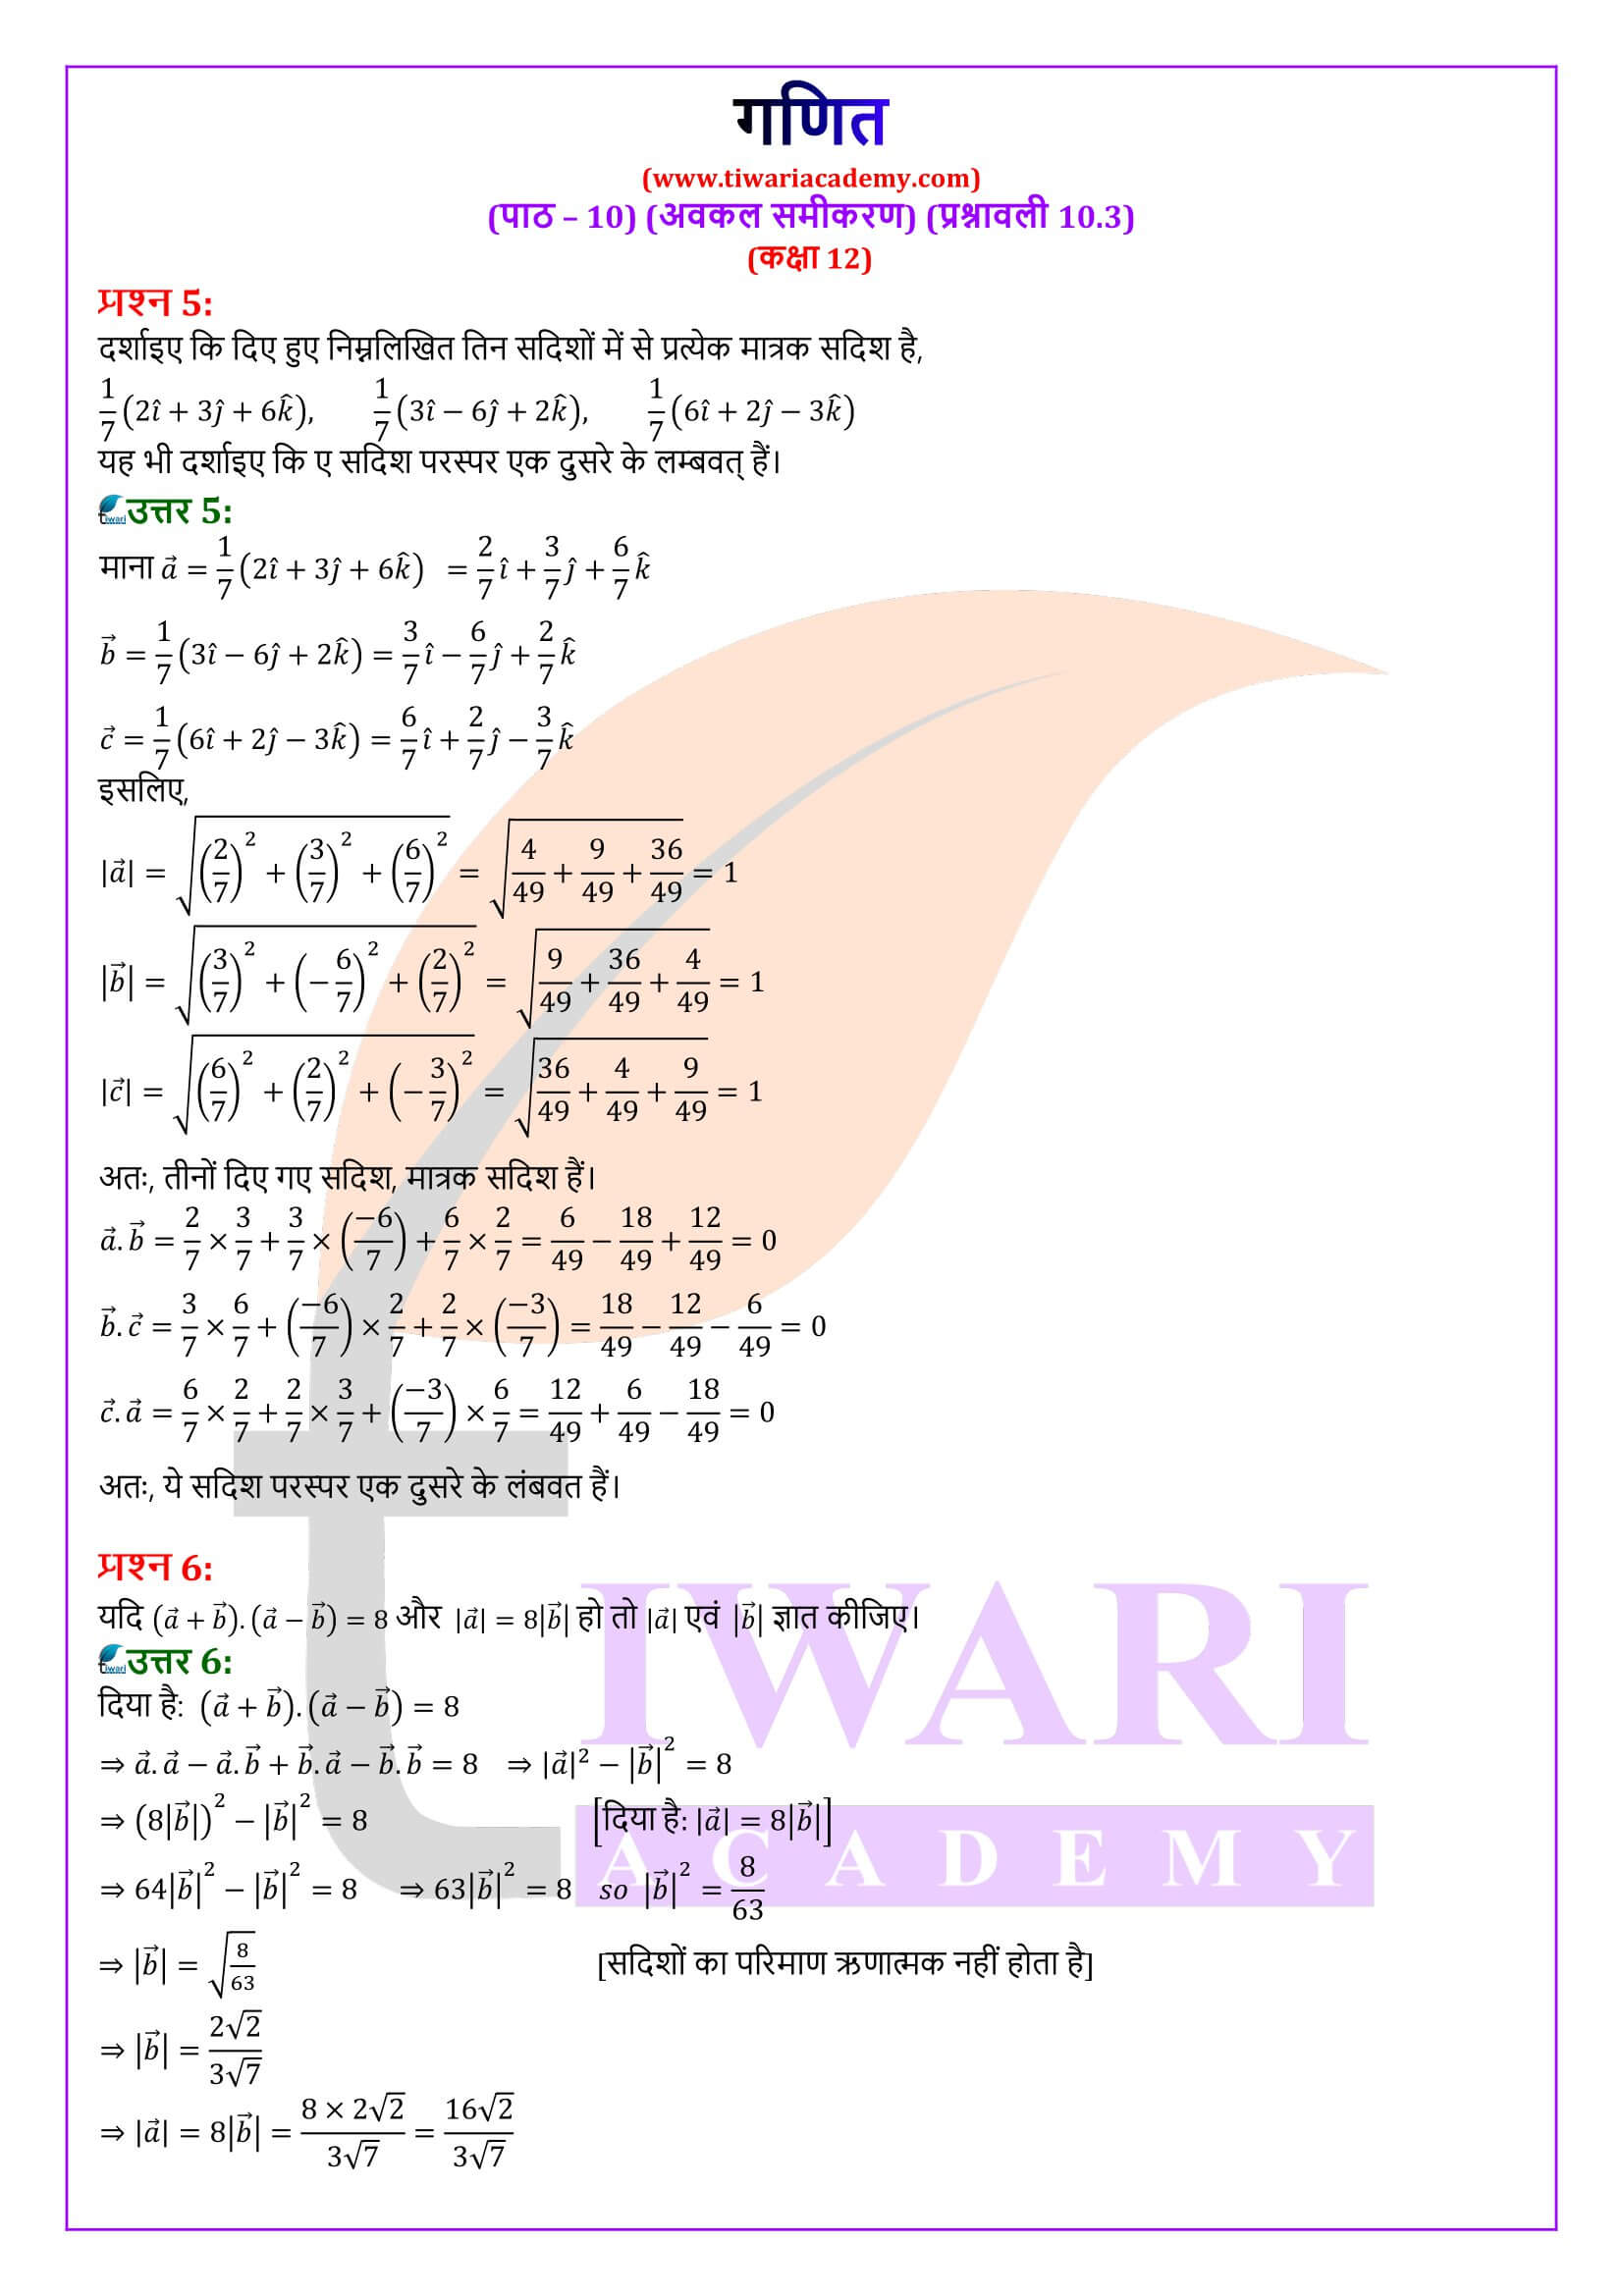 कक्षा 12 गणित अध्याय 10 प्रश्नावली 10.3 के सवाल जवाब